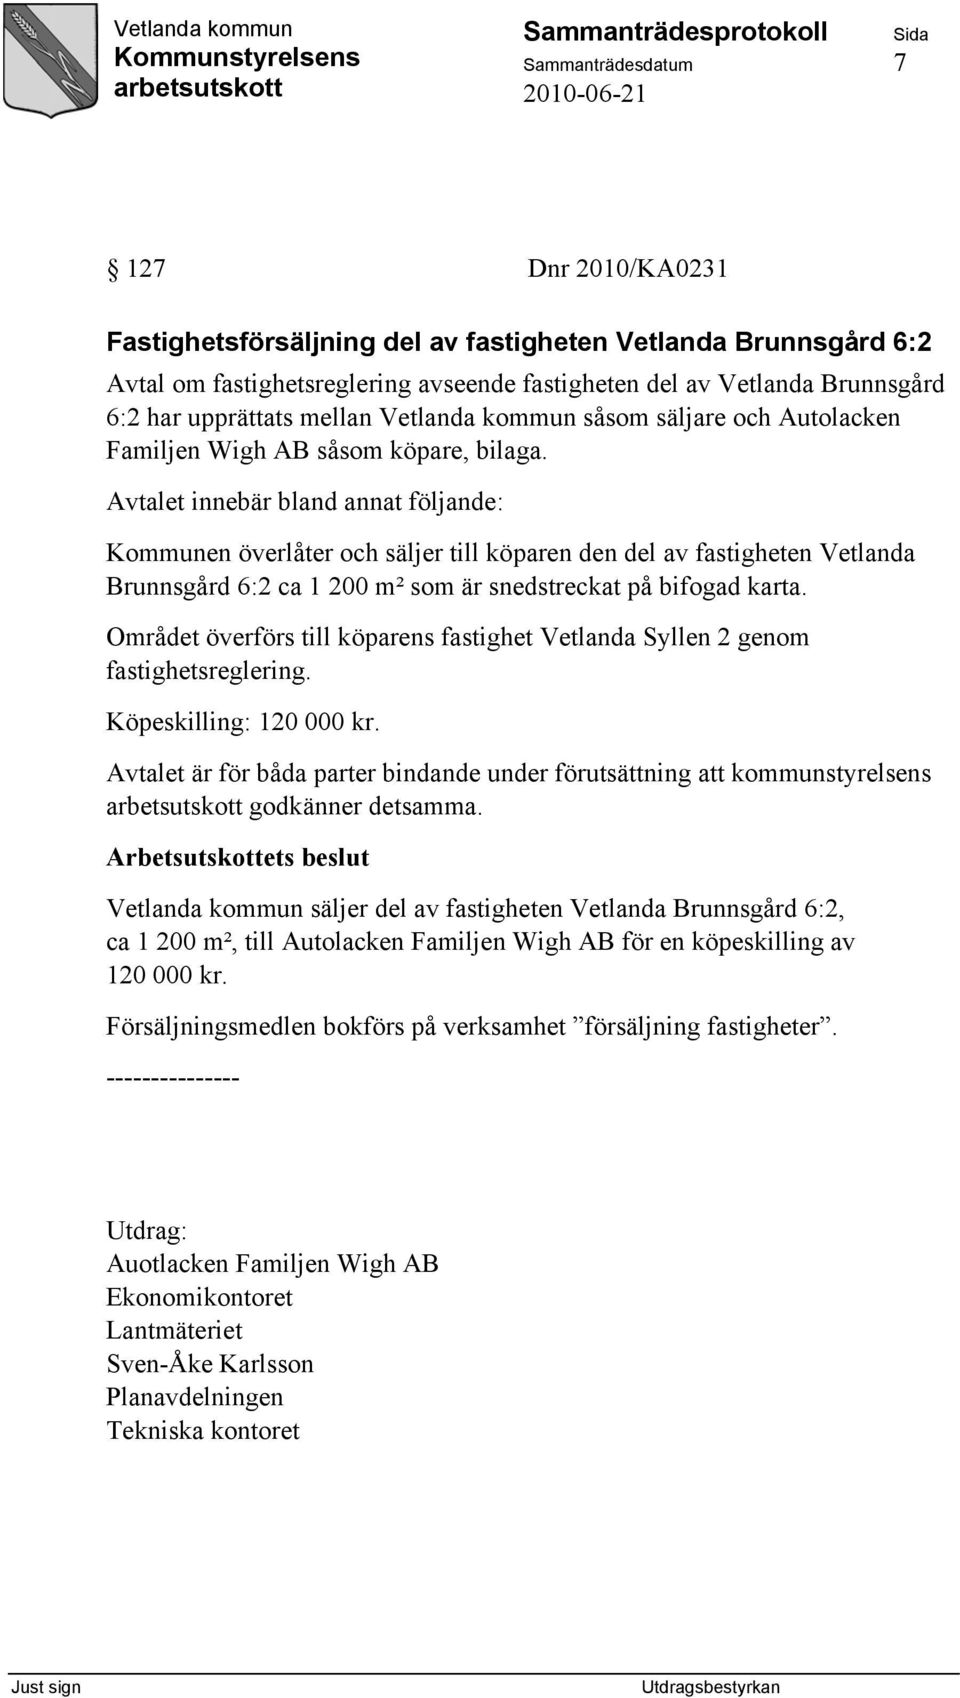 Avtalet innebär bland annat följande: Kommunen överlåter och säljer till köparen den del av fastigheten Vetlanda Brunnsgård 6:2 ca 1 200 m² som är snedstreckat på bifogad karta.